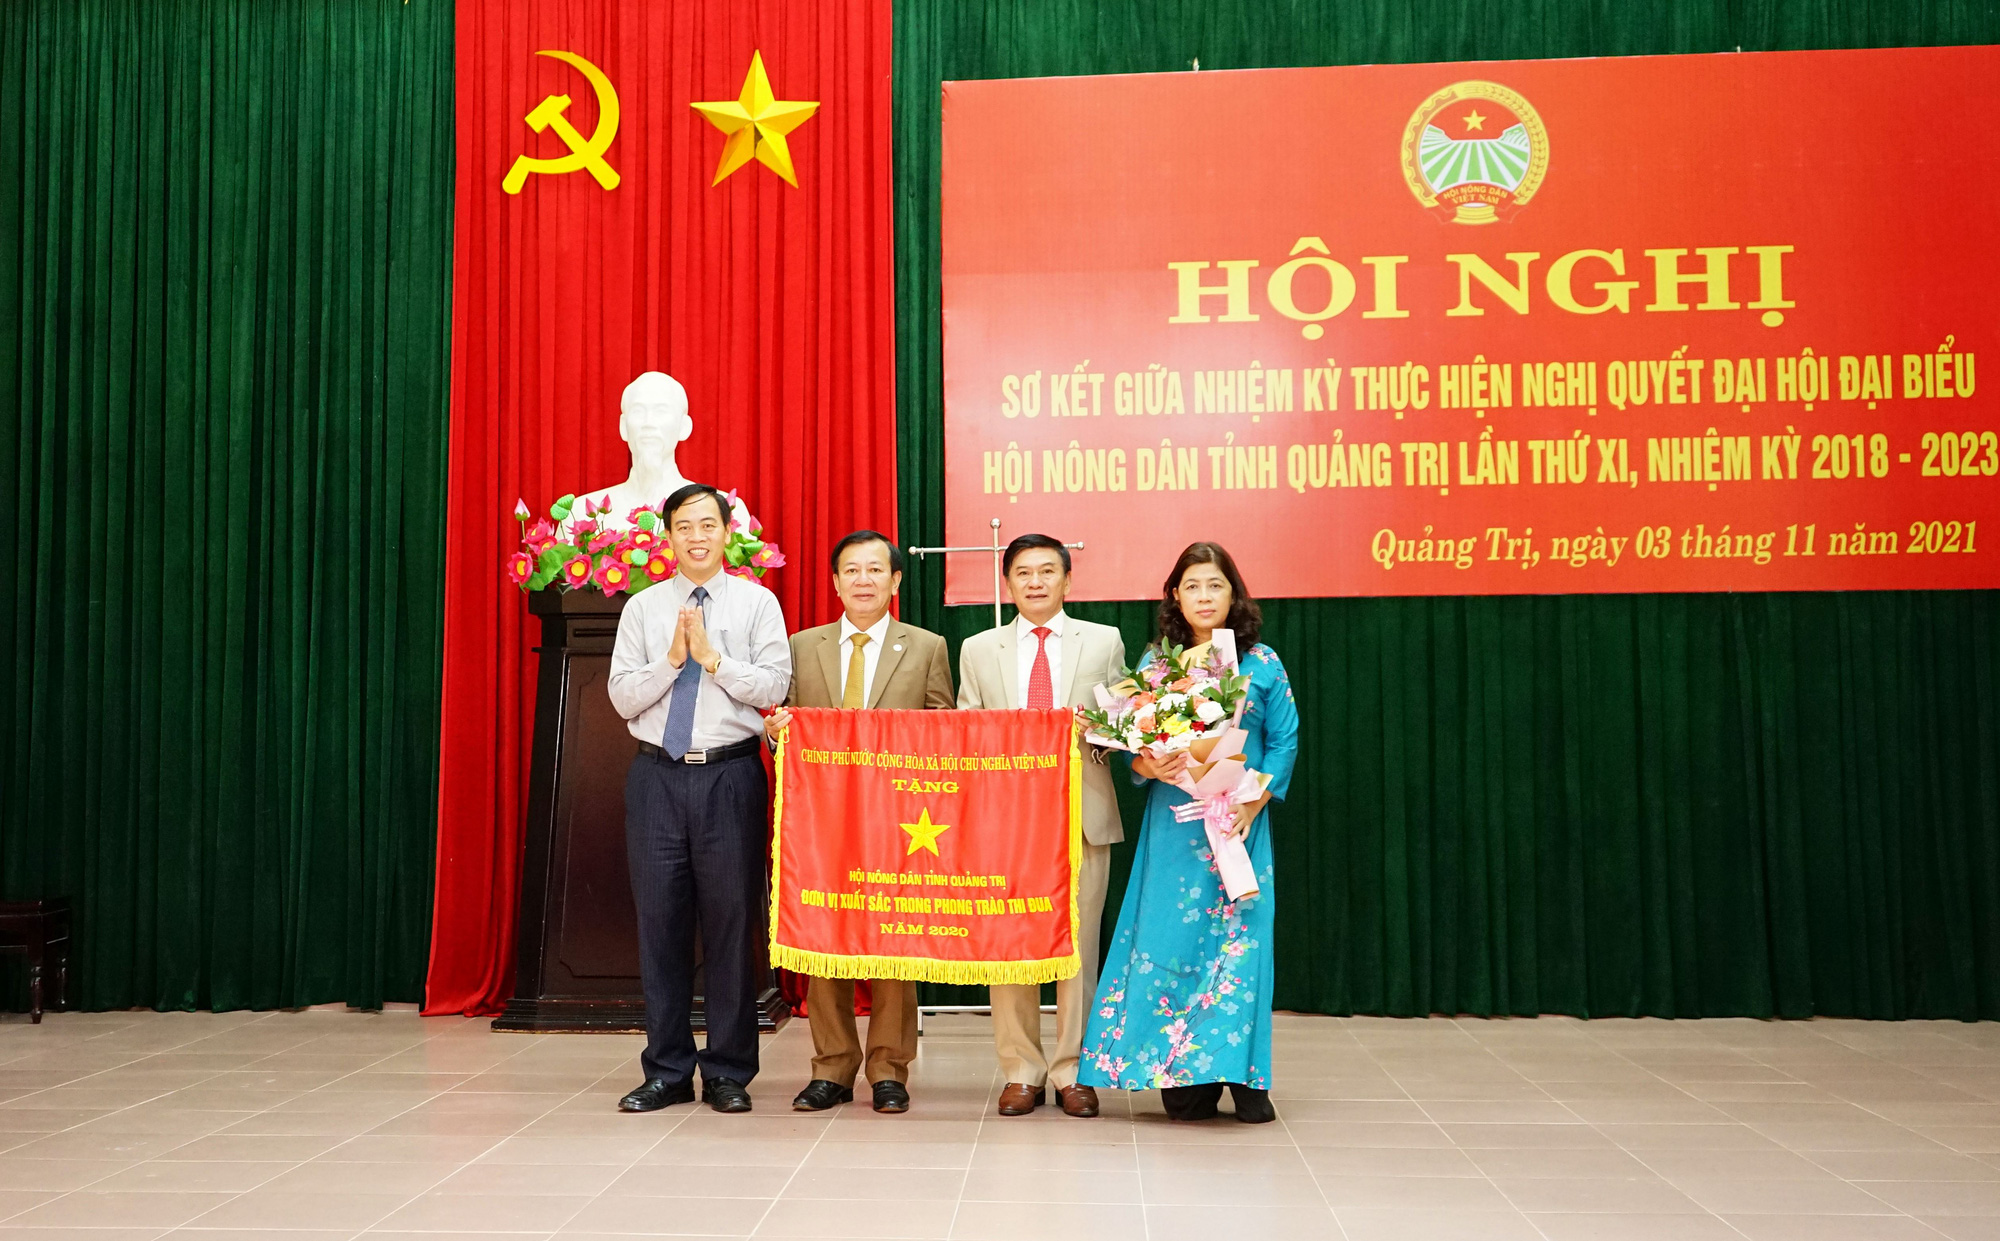 Hội Nông dân tỉnh Quảng Trị nhận Cờ thi đua xuất sắc của Chính phủ - Ảnh 1.